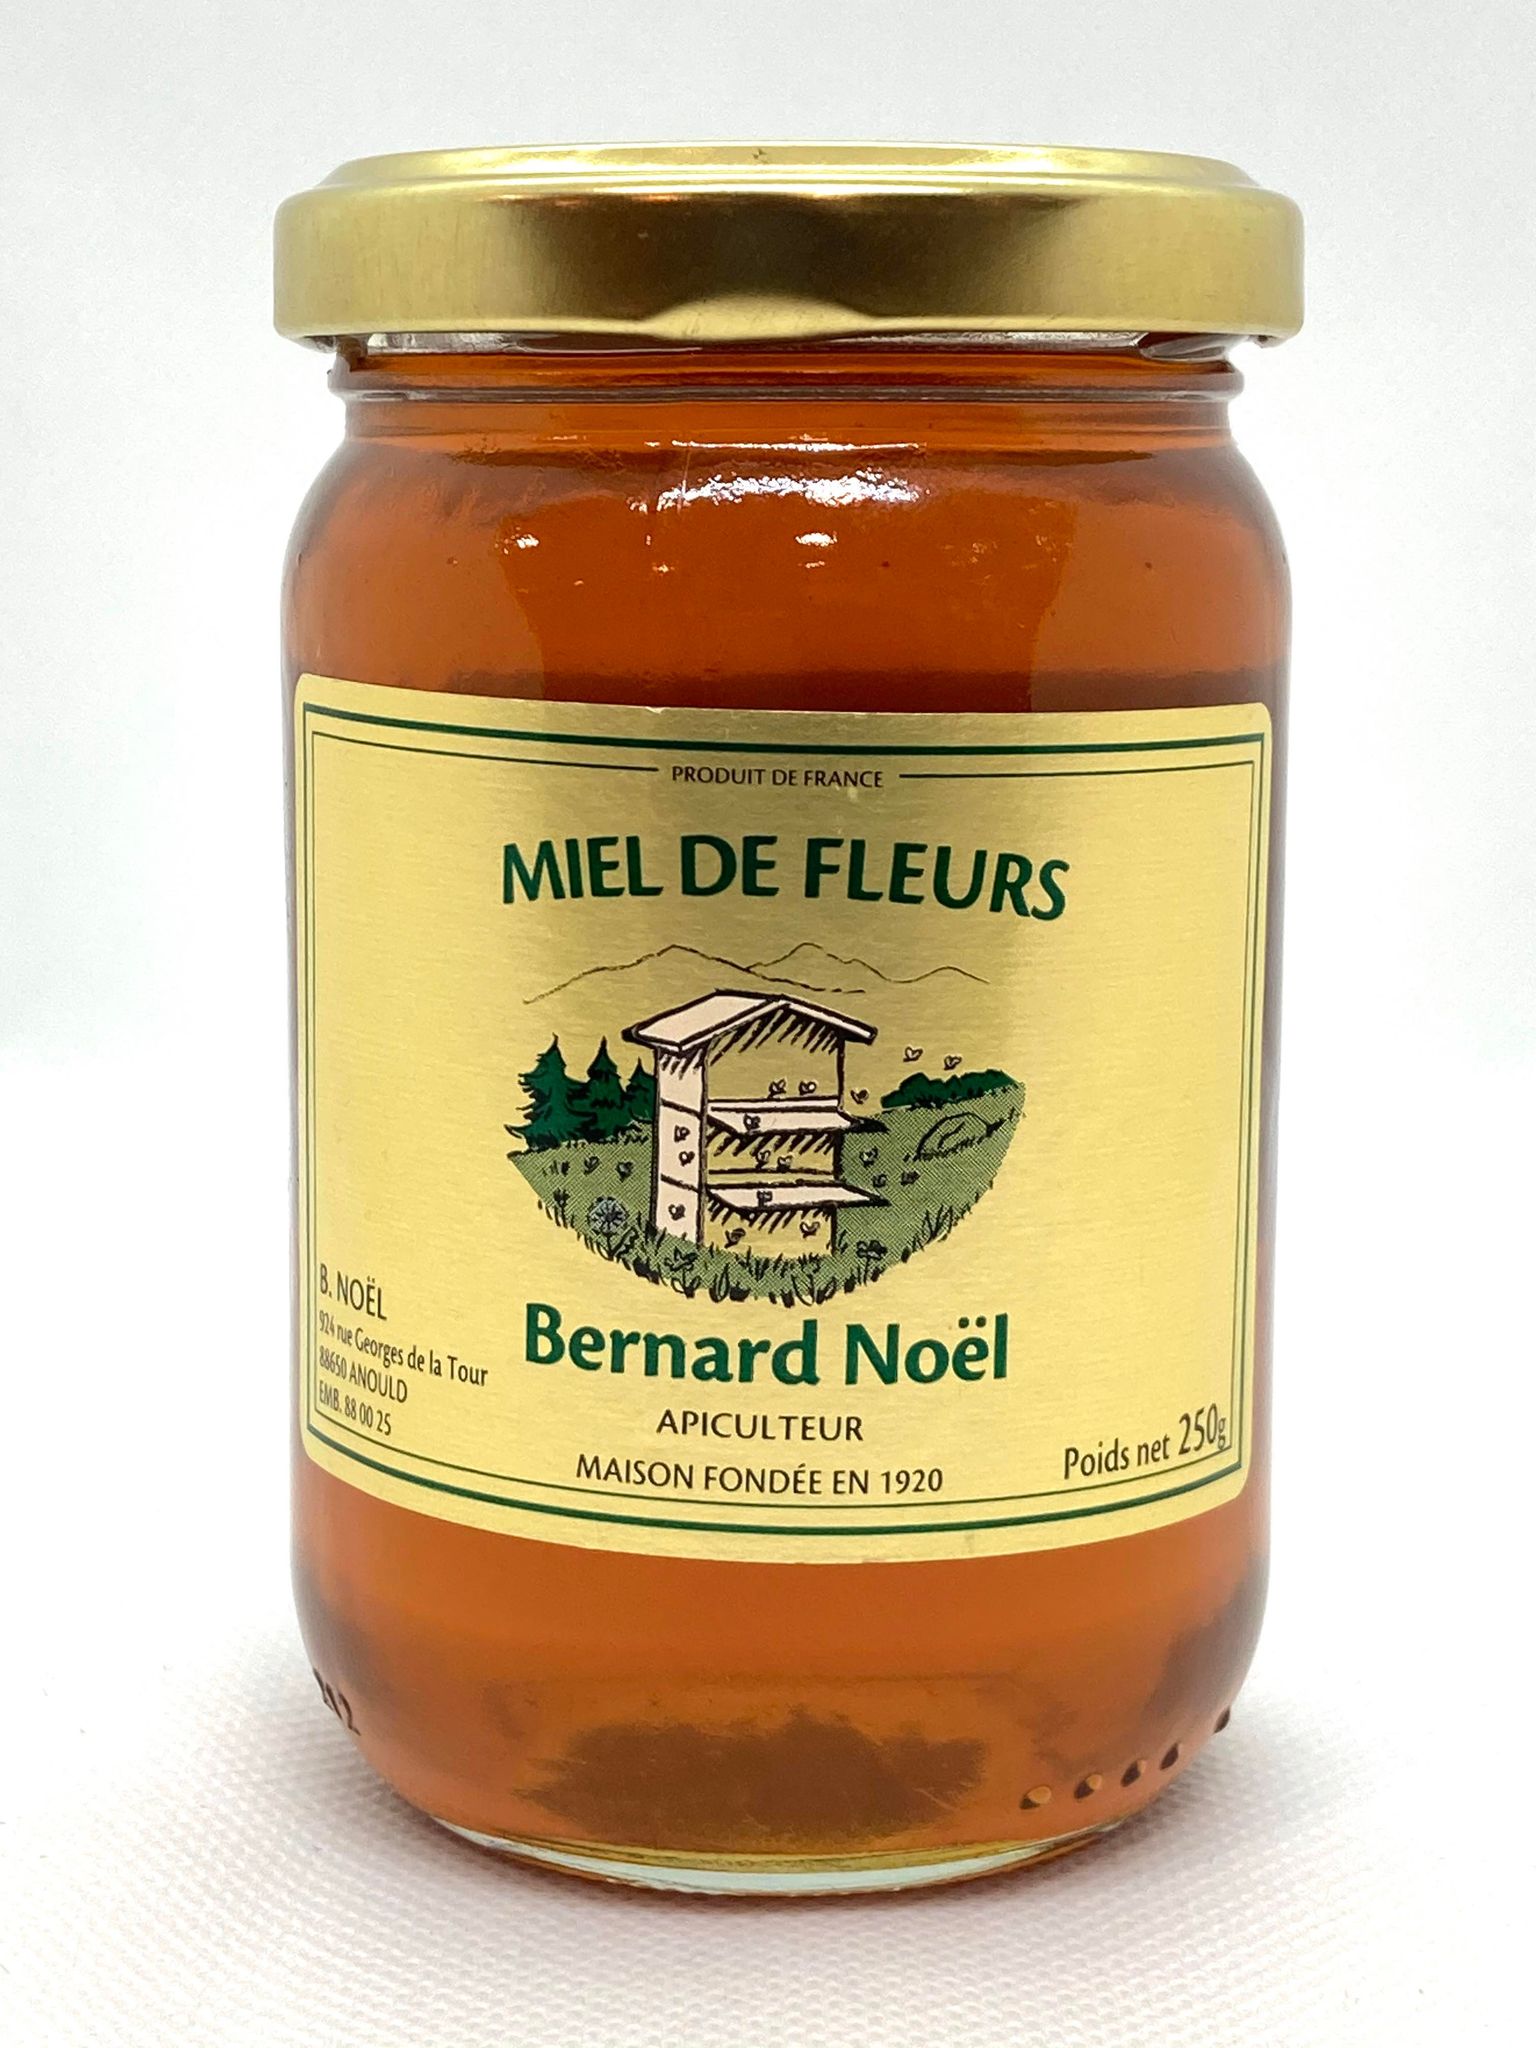 Miel de France et Gelée Royale MIEL l'Apiculteur® - 250g